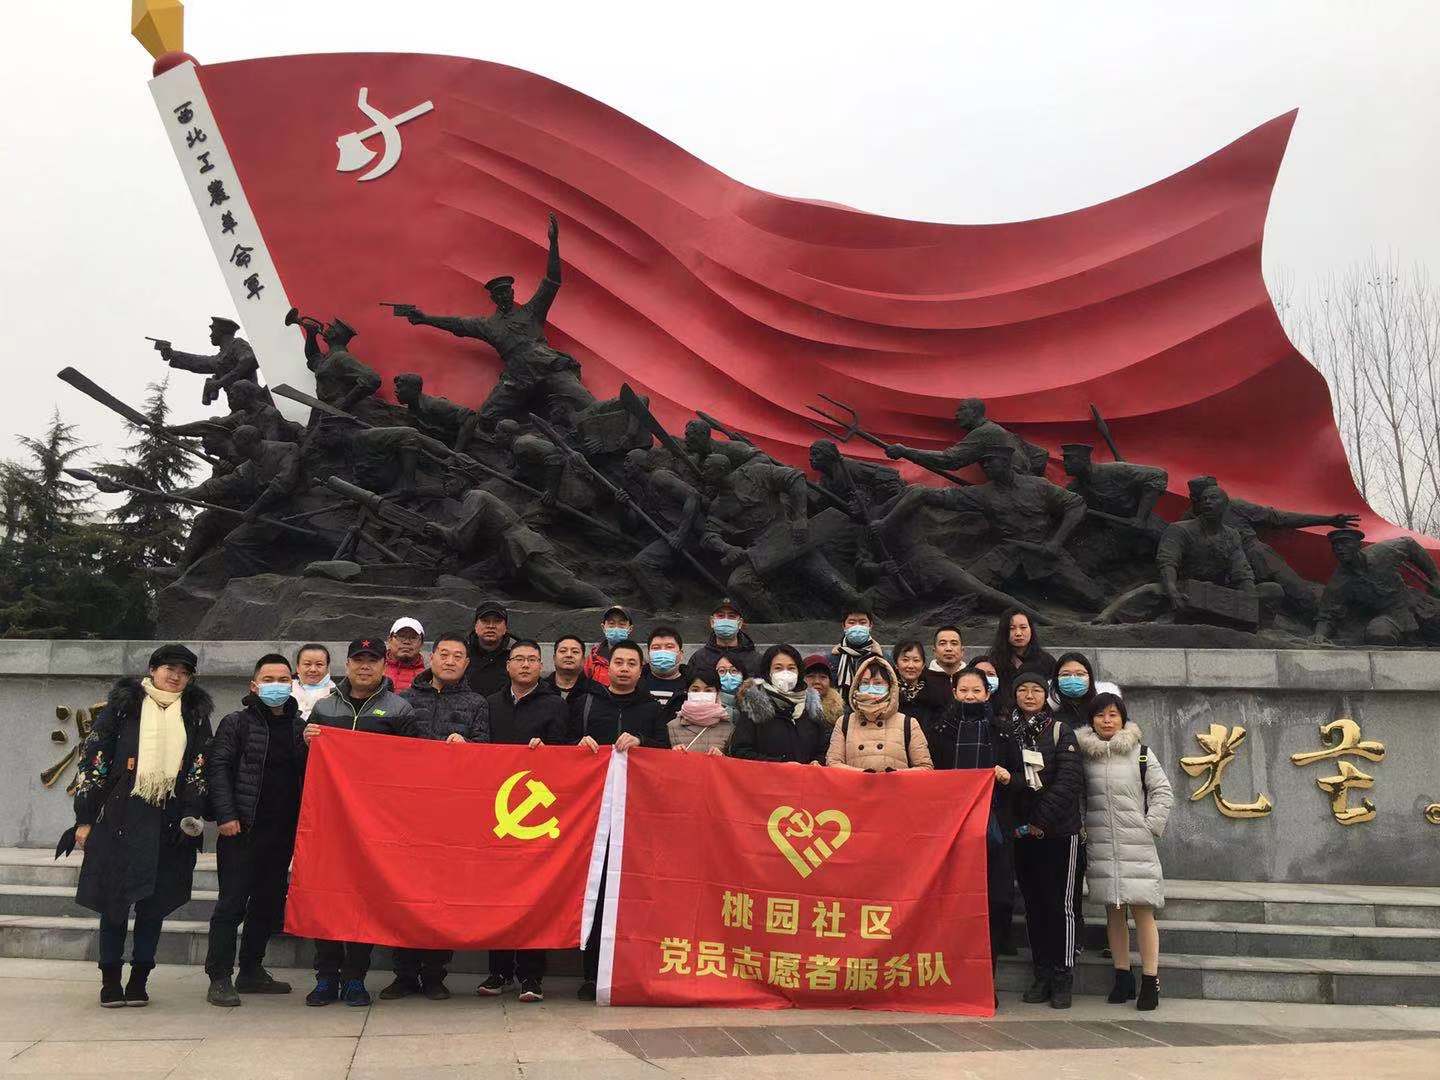 弘扬革命精神 汲取精神力量----《渭华起义纪念馆》红色之旅